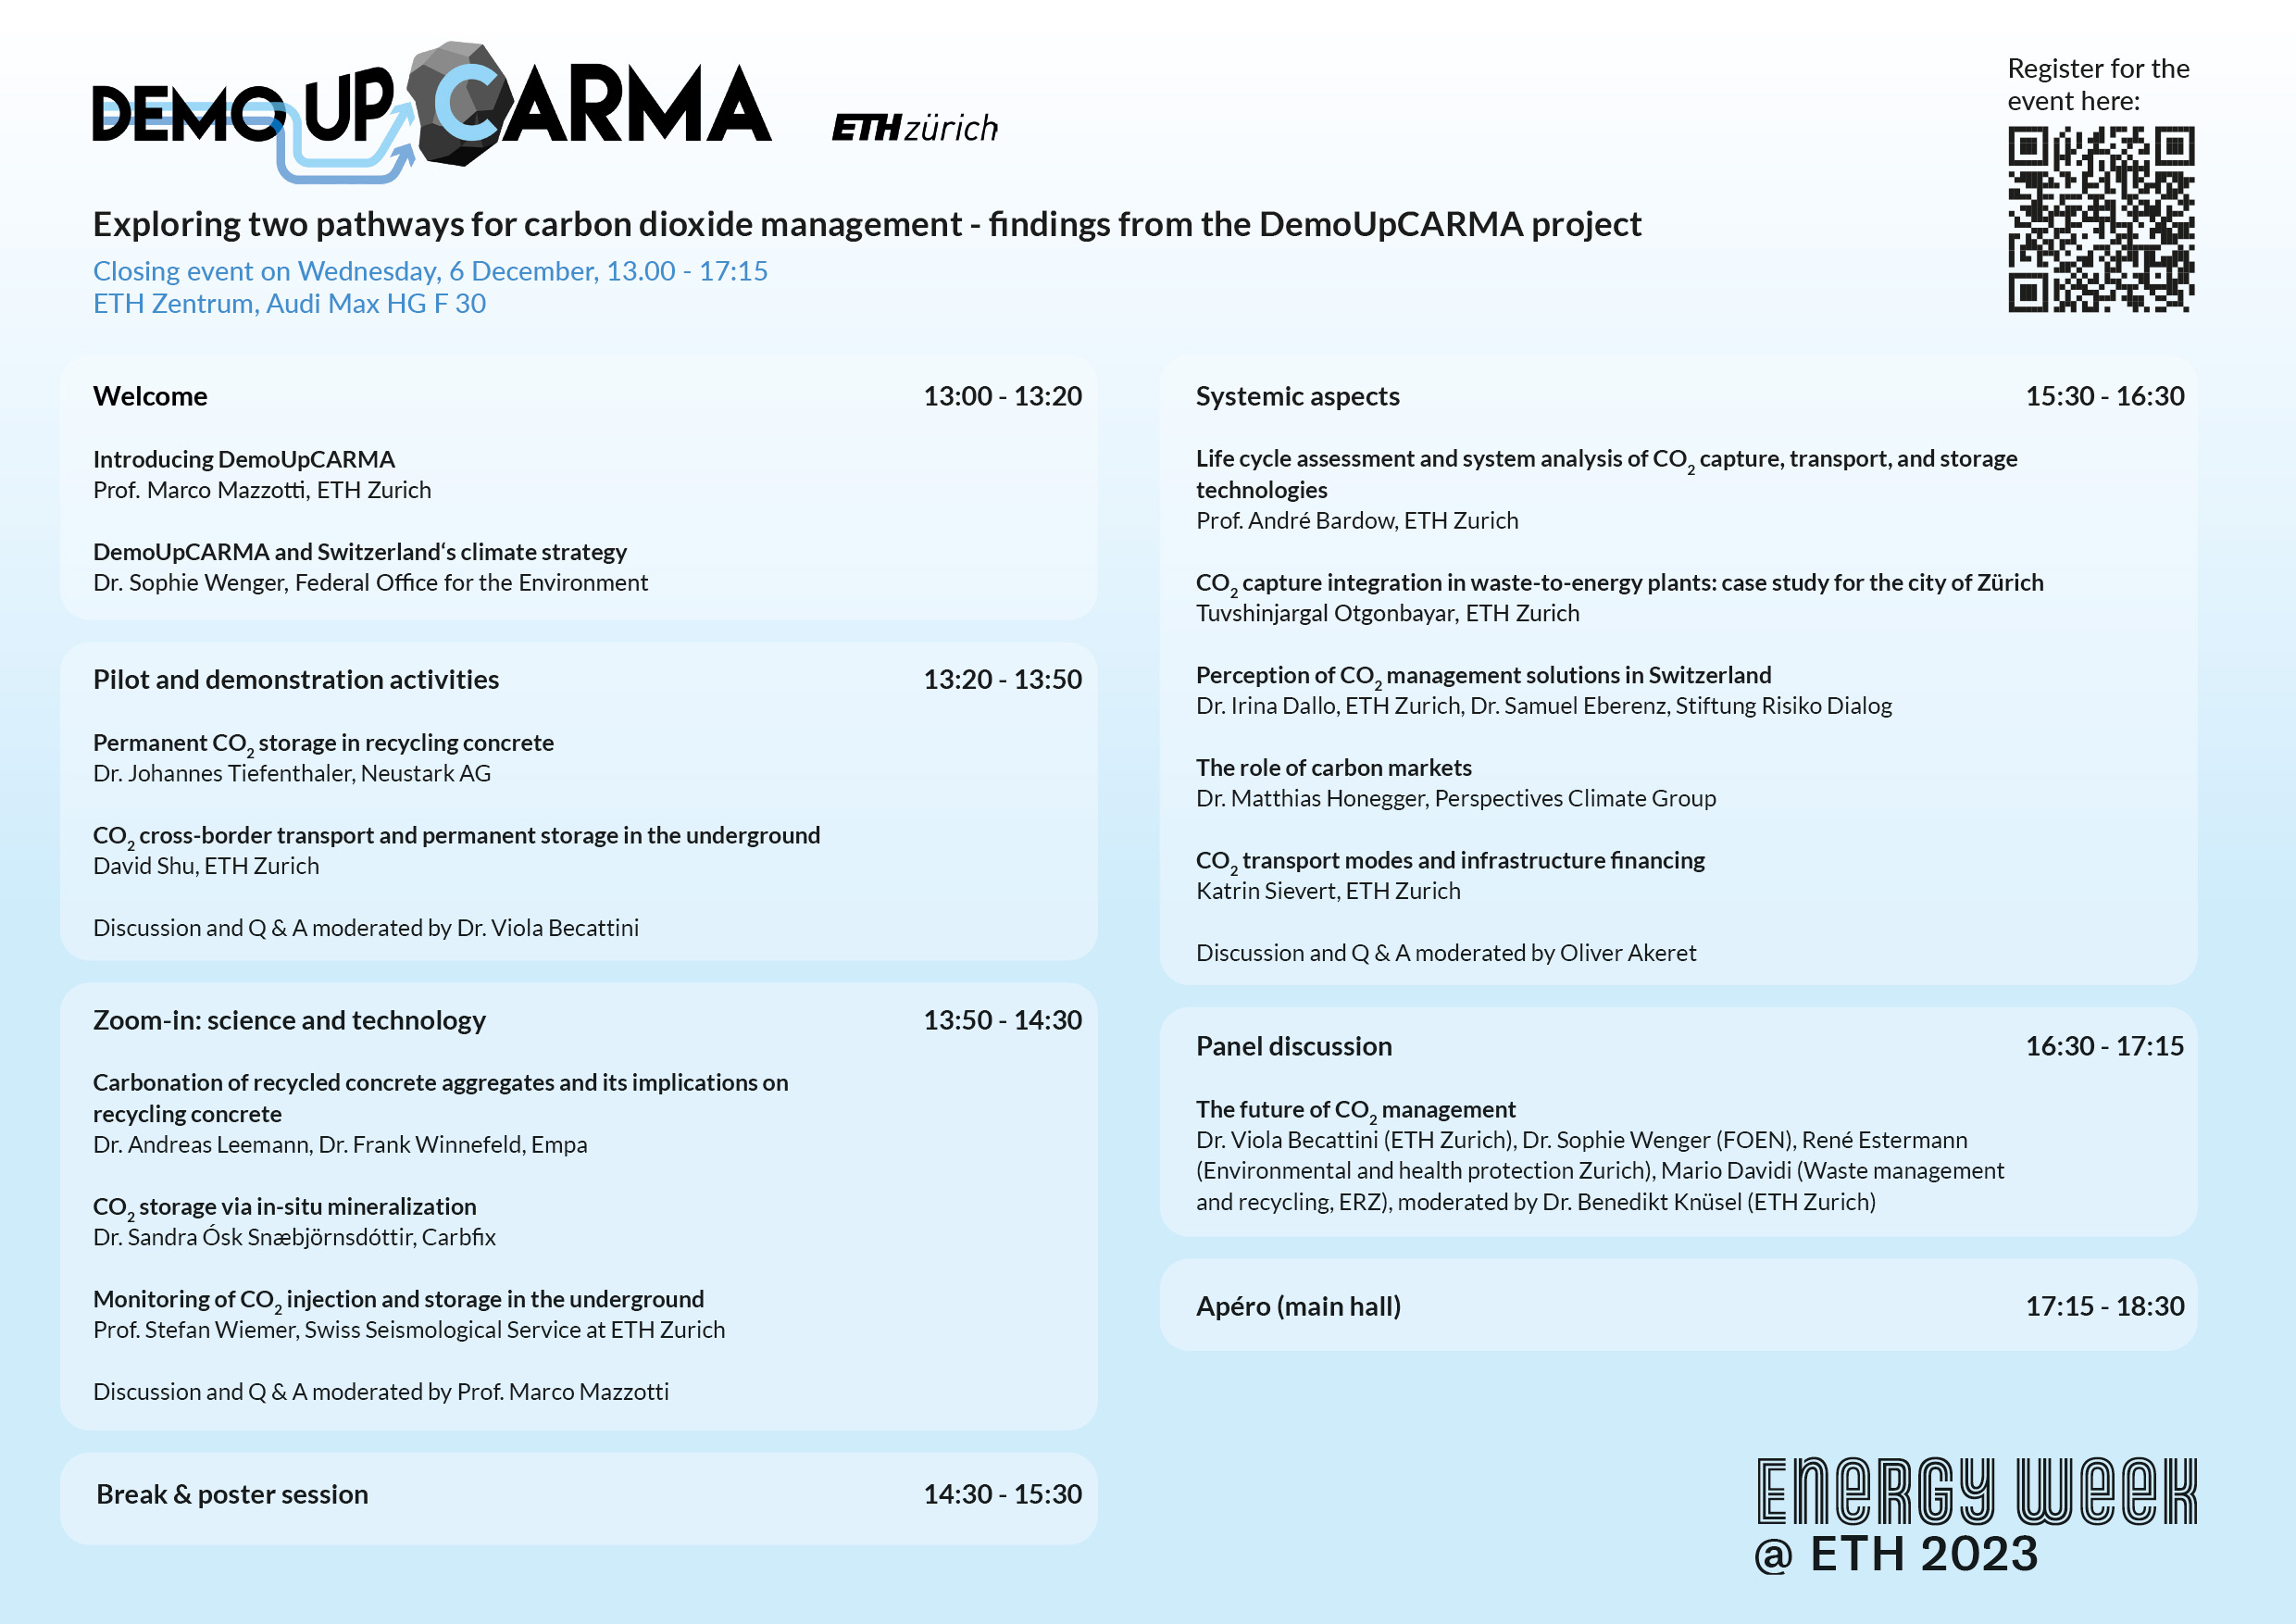 DemoUpCARMA Closing Event - Registration open!